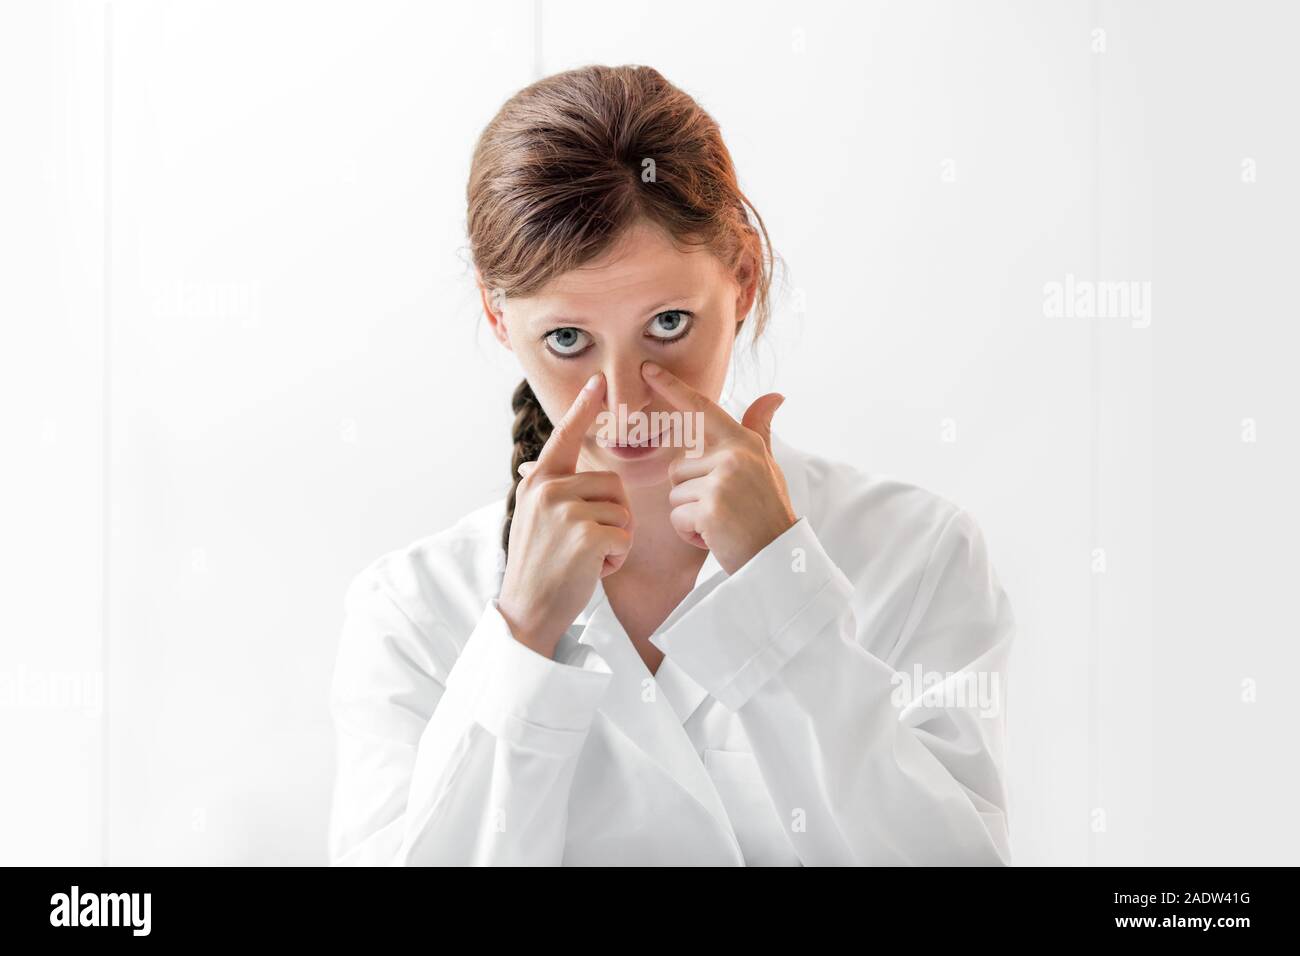 Junge Ärztin zeigen, wie Nasennebenhöhlen oder der Nase Krankheiten zu prüfen, weisser Hintergrund mit Copyspace Stockfoto